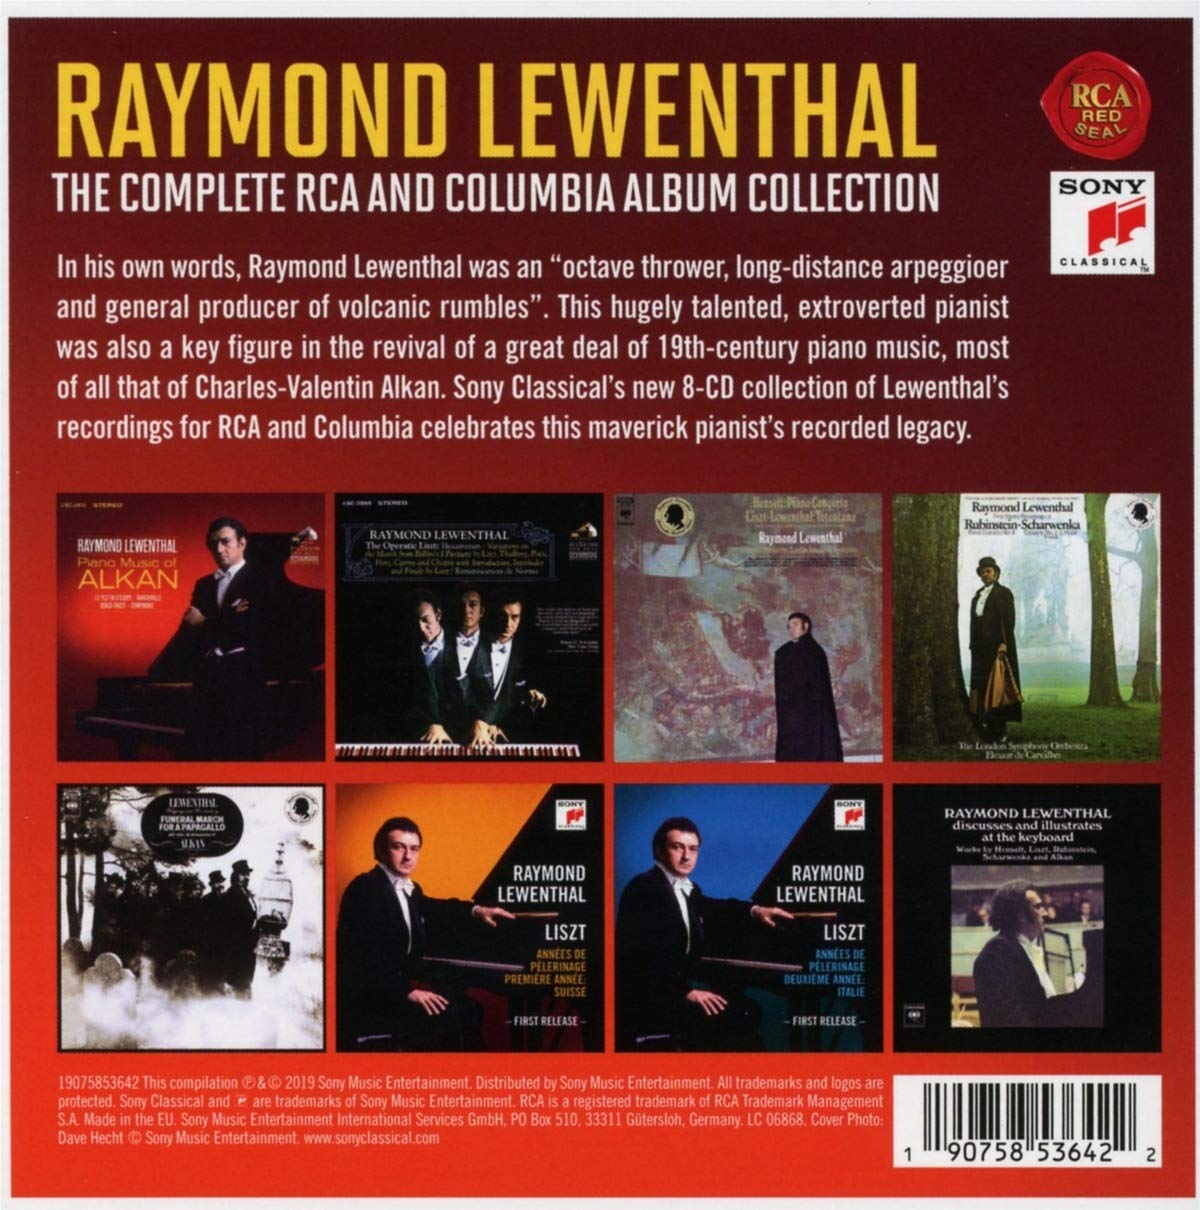 레이몬드 르웬탈 RCA, 컬럼비아 앨범 컬렉션 (Raymond Lewenthal - The Complete RCA and Columbia Album Collection)